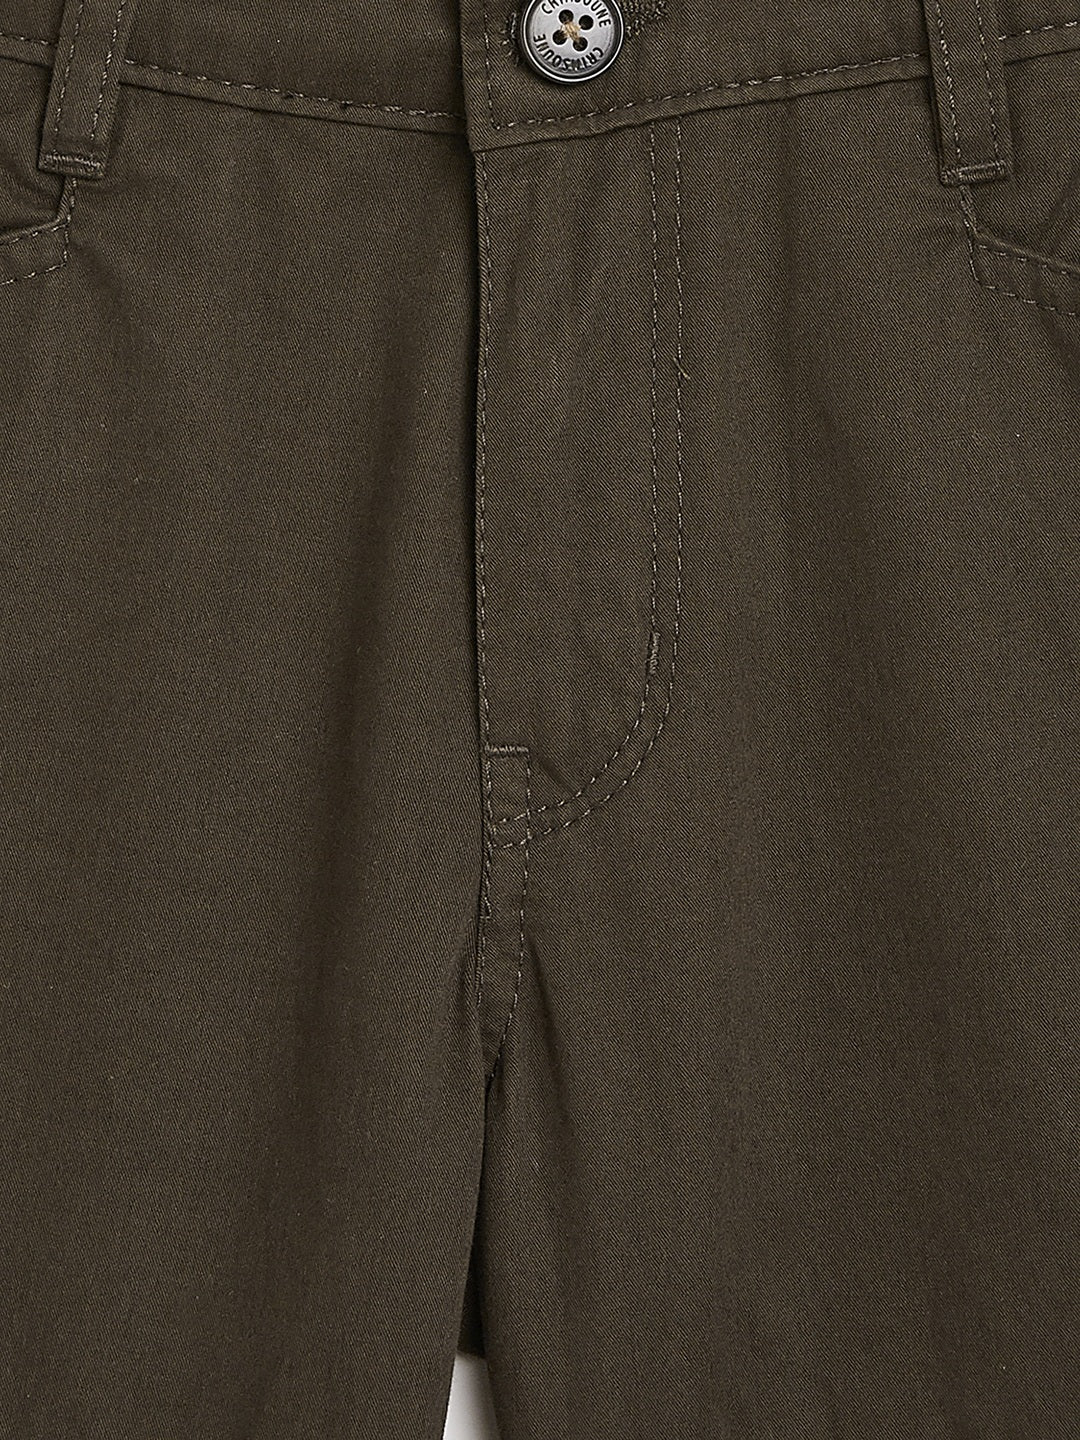 Olive Solid Cargro Shorts-Boys Shorts-Crimsoune Club